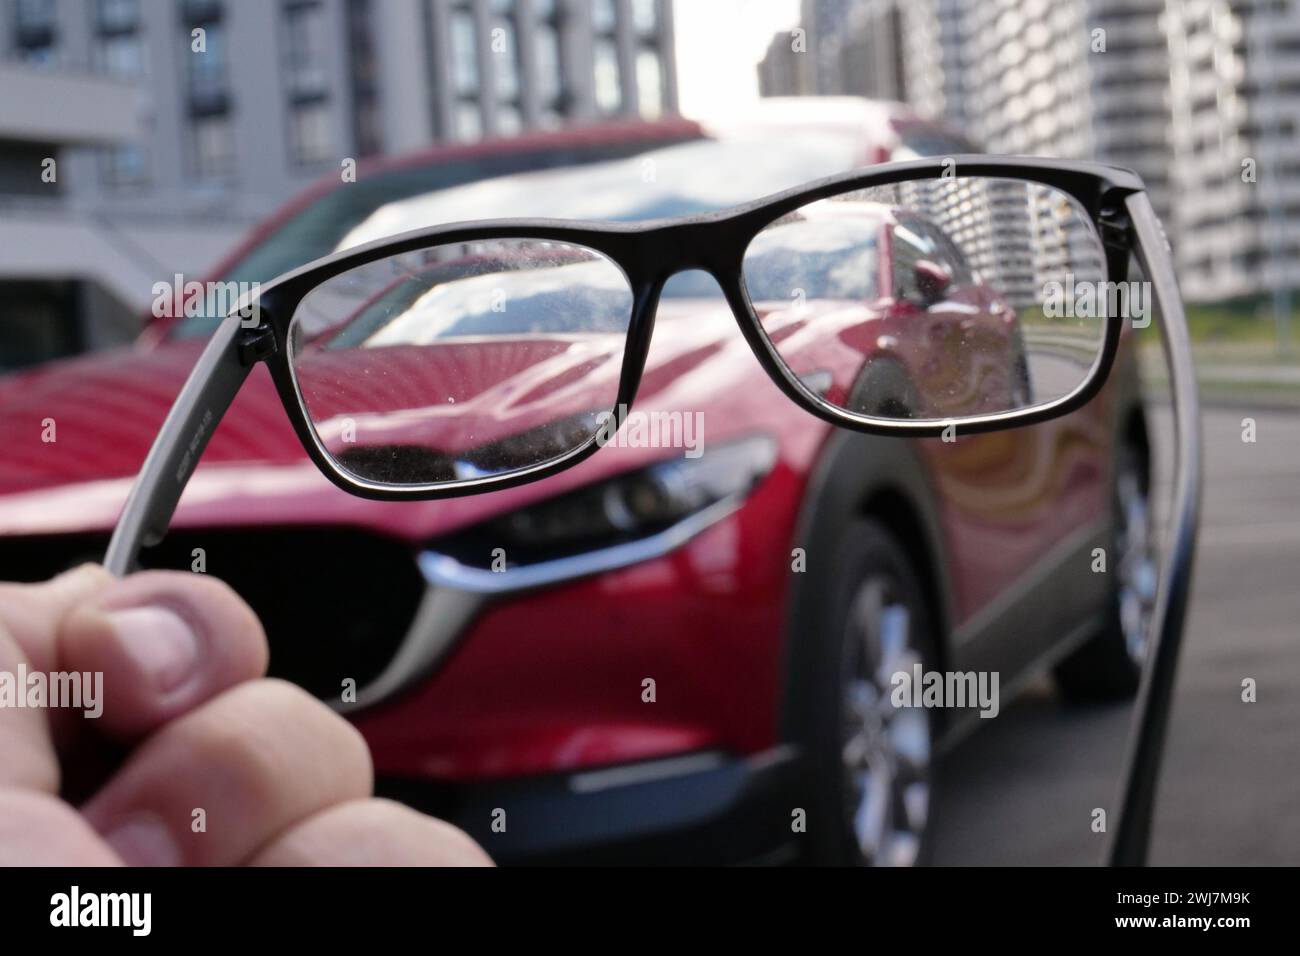 La photo conceptuelle sur la mauvaise vue du conducteur avec la voiture défocalisée est visible dans des lunettes sales dans la main humaine Banque D'Images